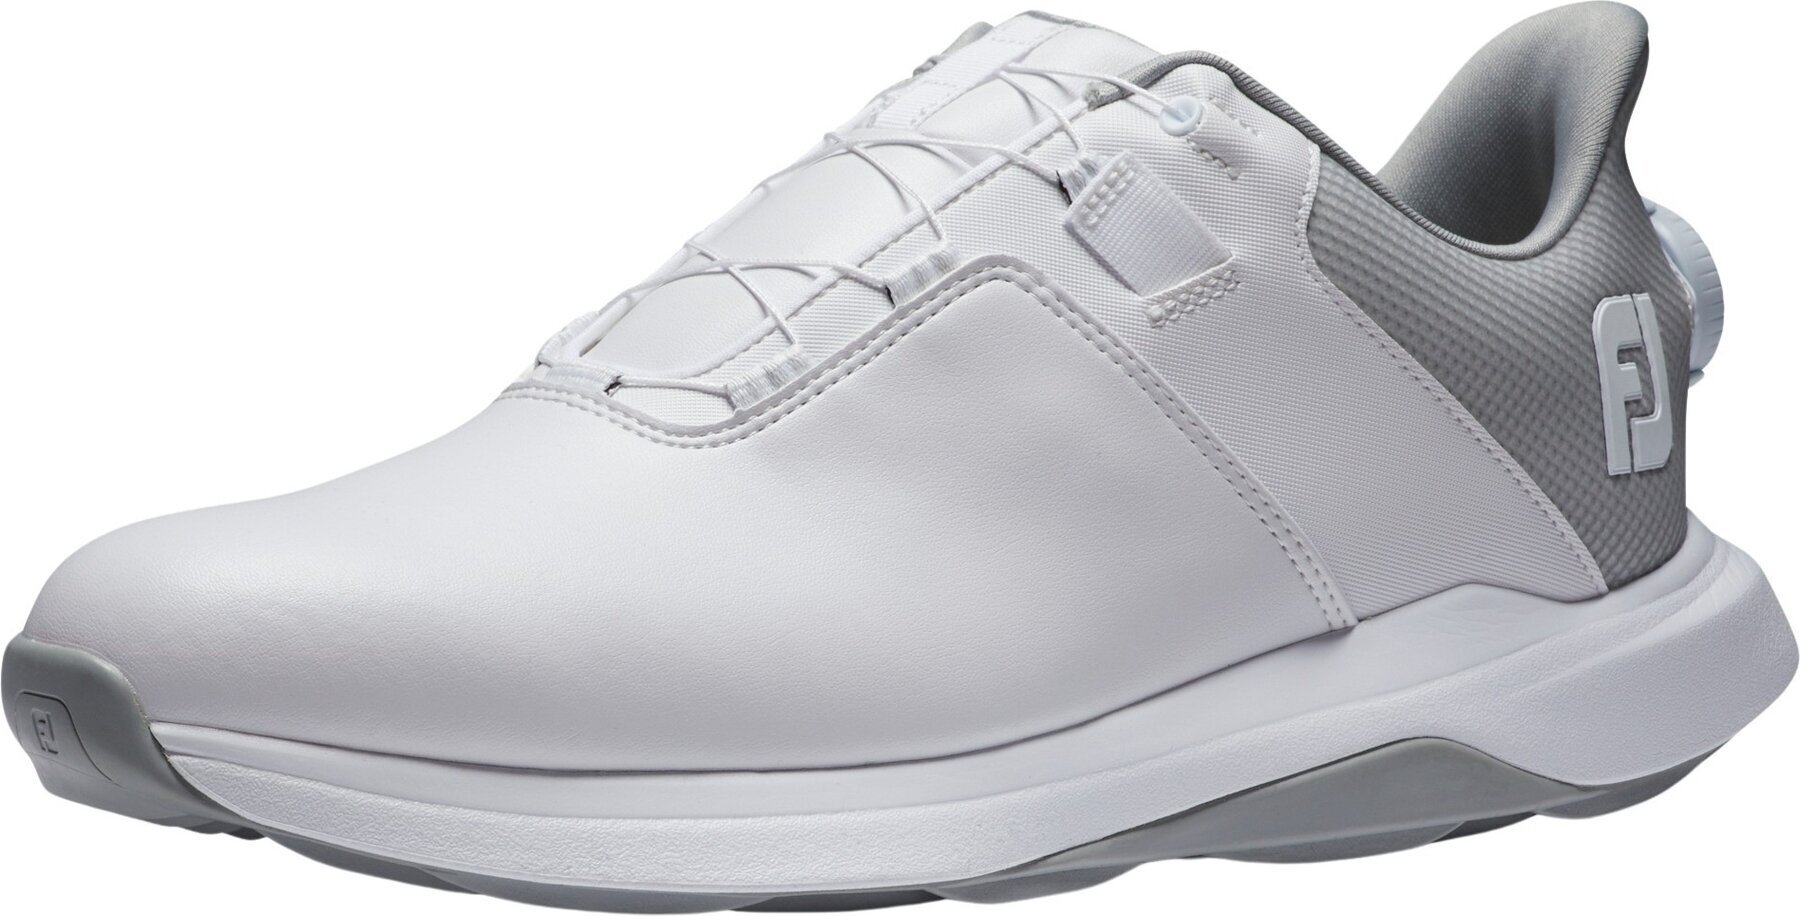 Calçado de golfe para homem Footjoy ProLite Mens Golf Shoes White/White/Grey 44,5